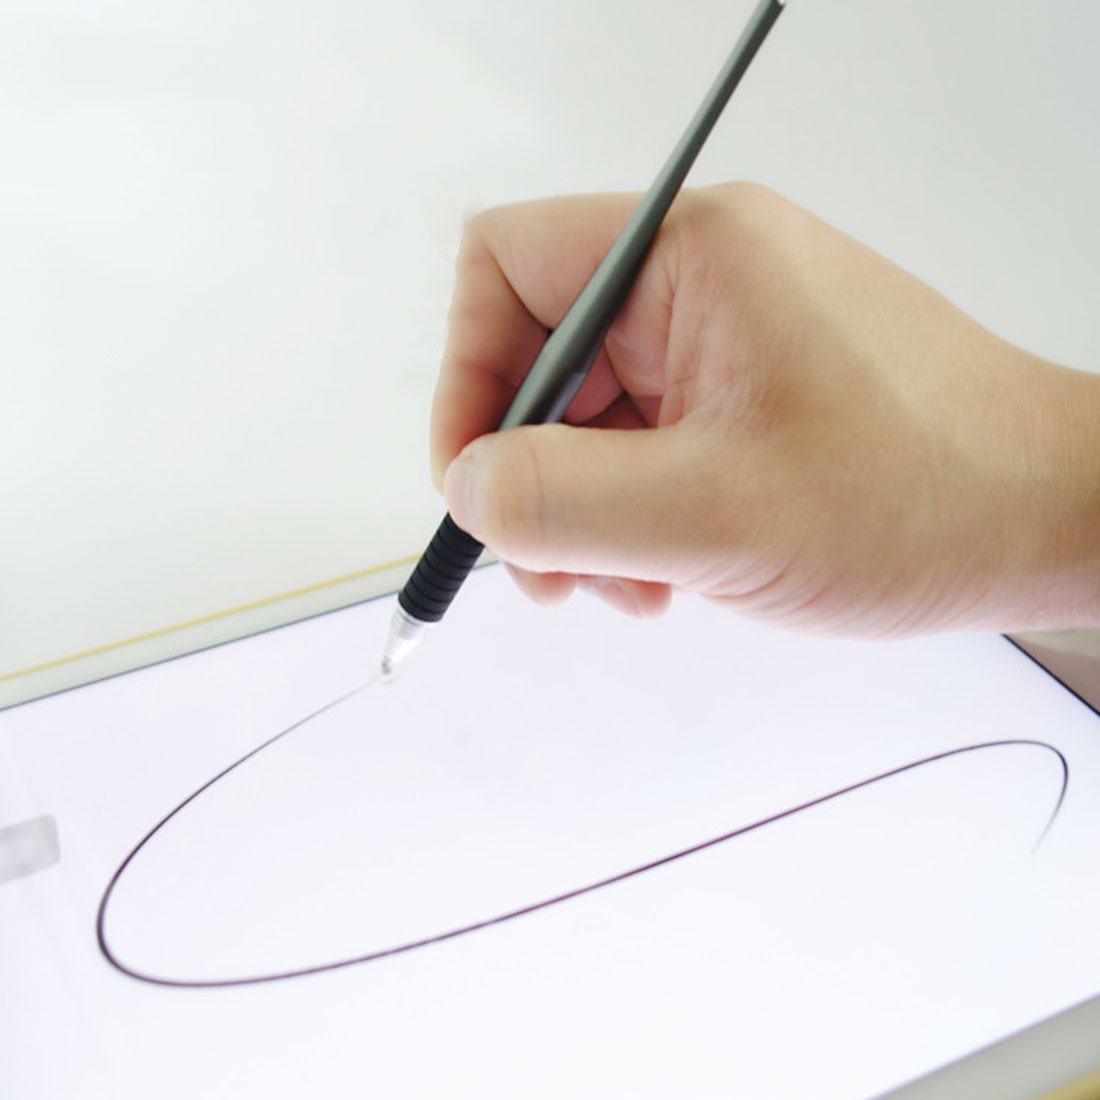 2 In 1 Pen Metalen Tekening Pen Touch Screen Stylus Pen Voor Smart Phone Tablet Pc Voor Ipad